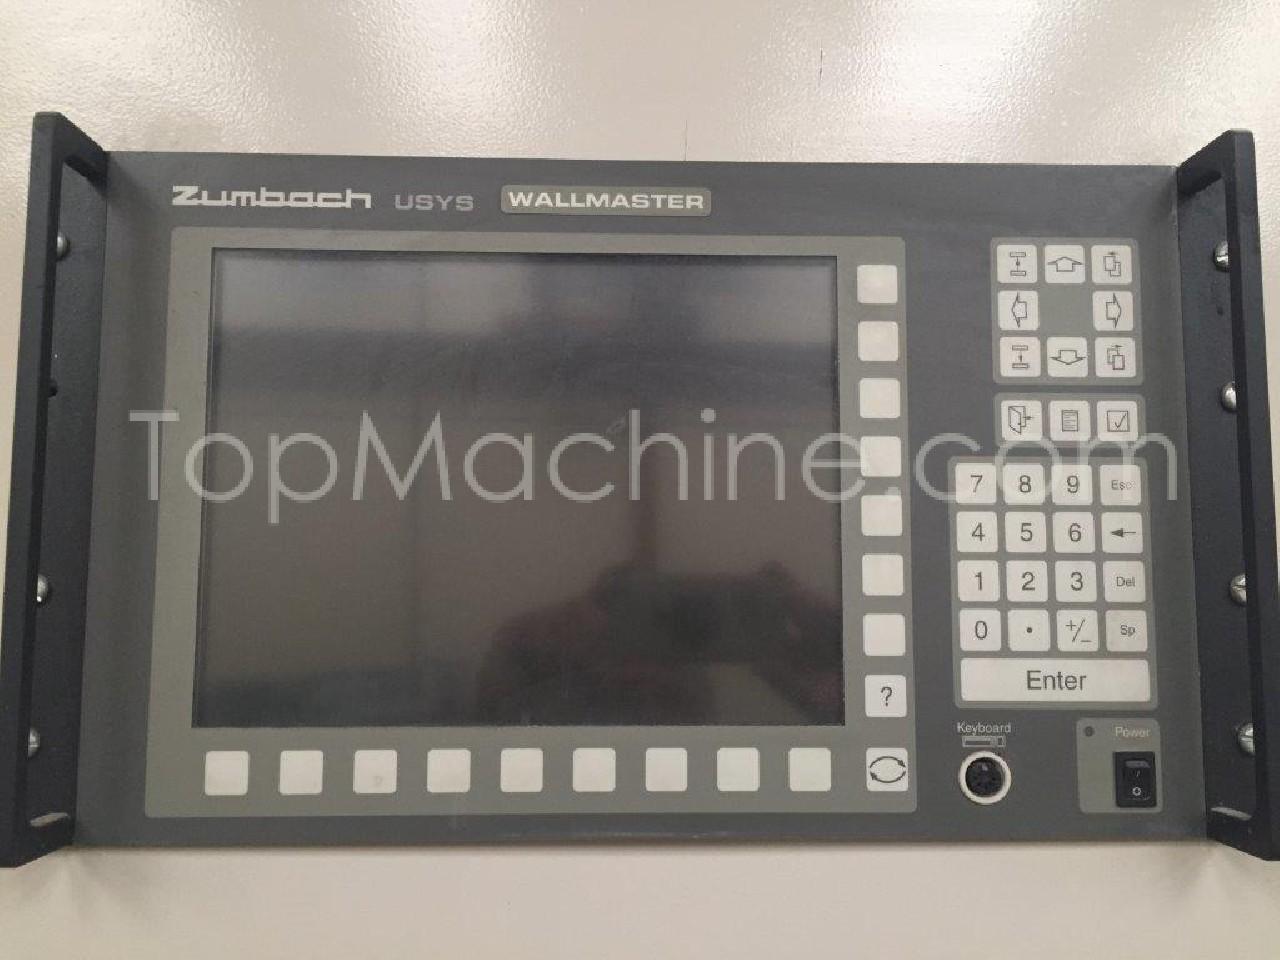 Used Zumbach USYS Wallmaster Zamienne Elektryczny